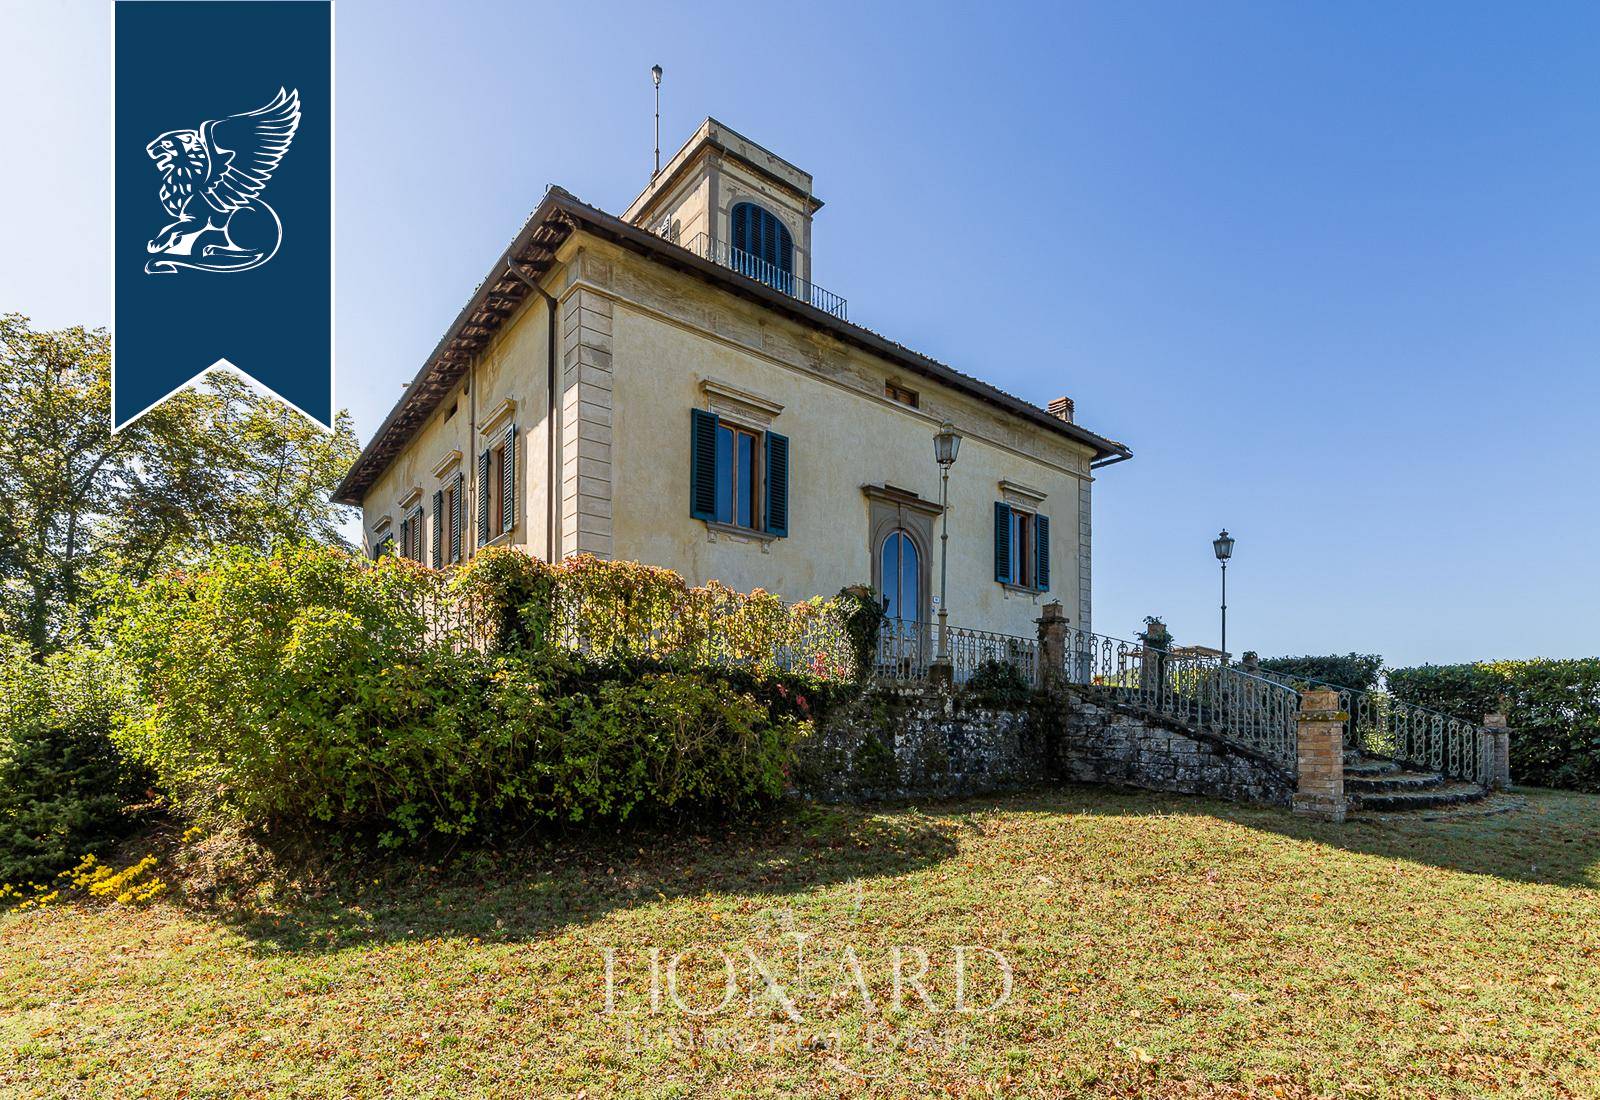 Villa in Vendita a Borgo San Lorenzo: 0 locali, 1000 mq - Foto 1